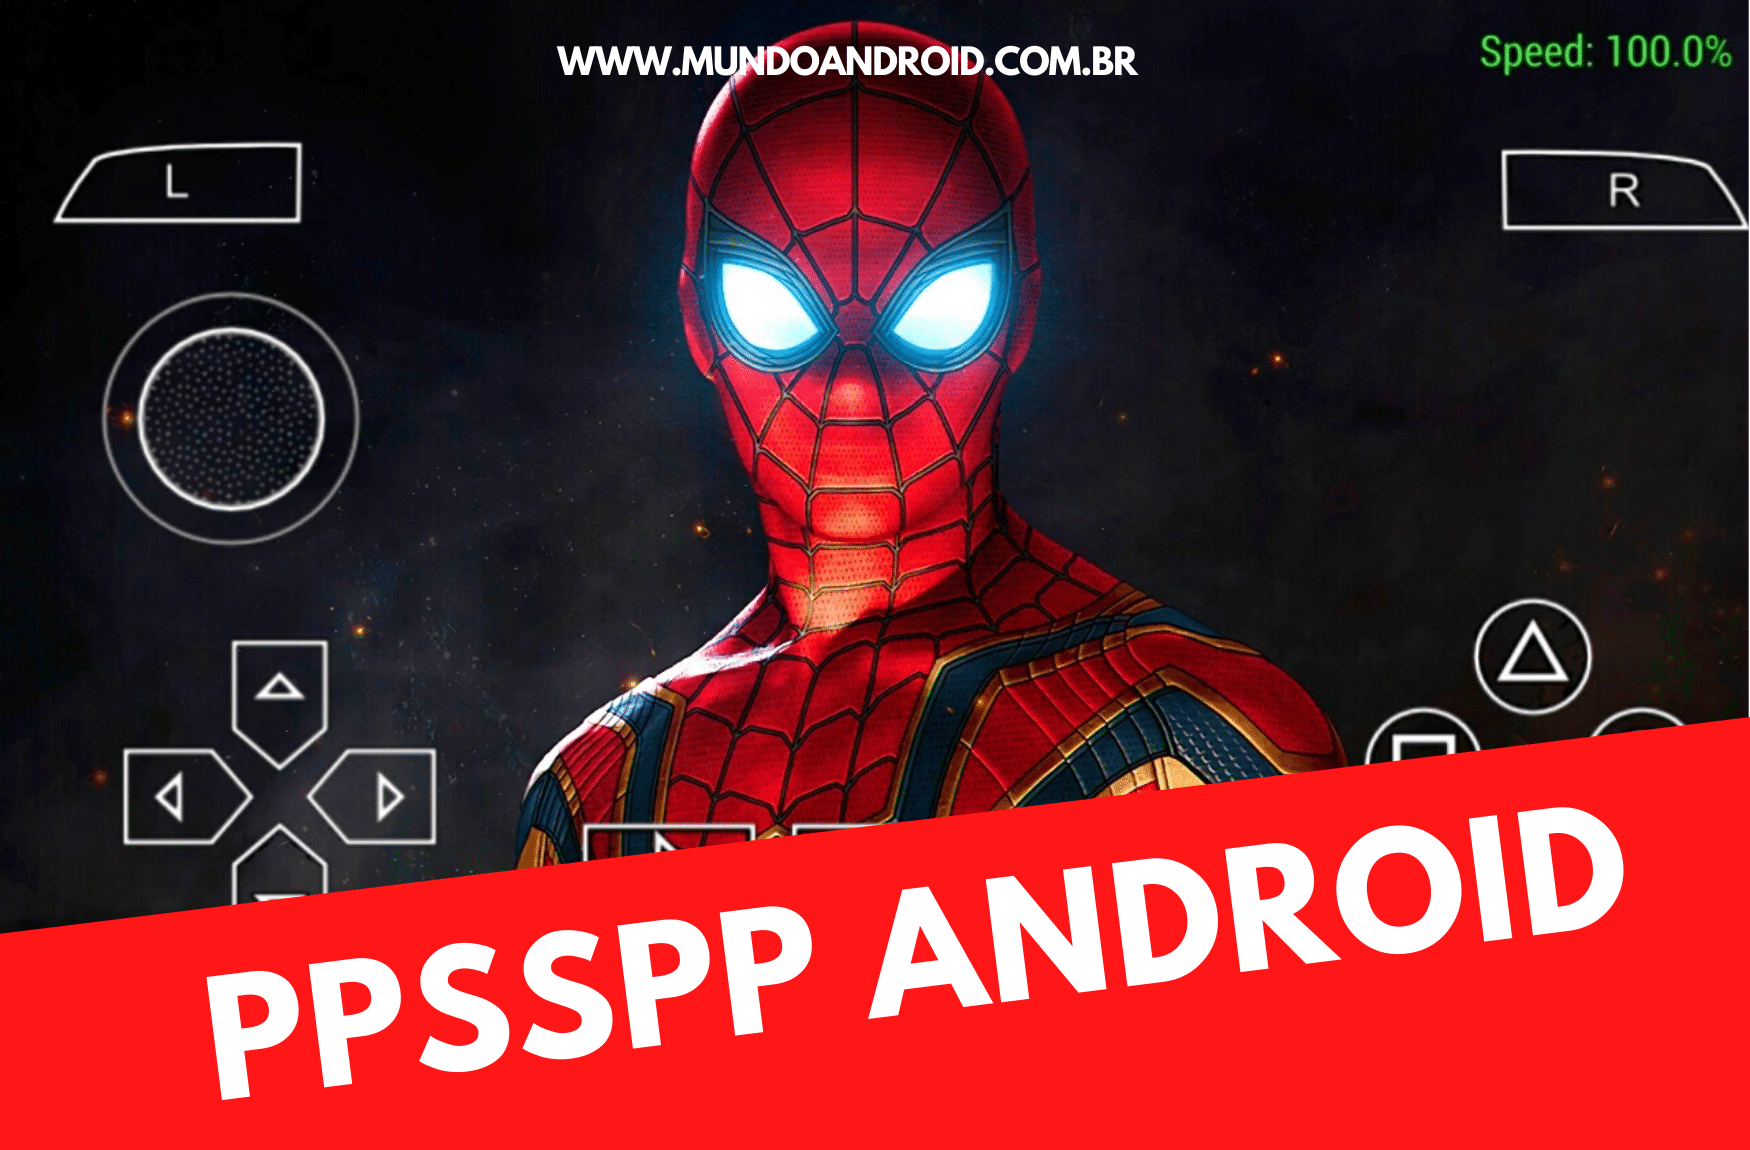 spider man 2018 ppsspp isoroms